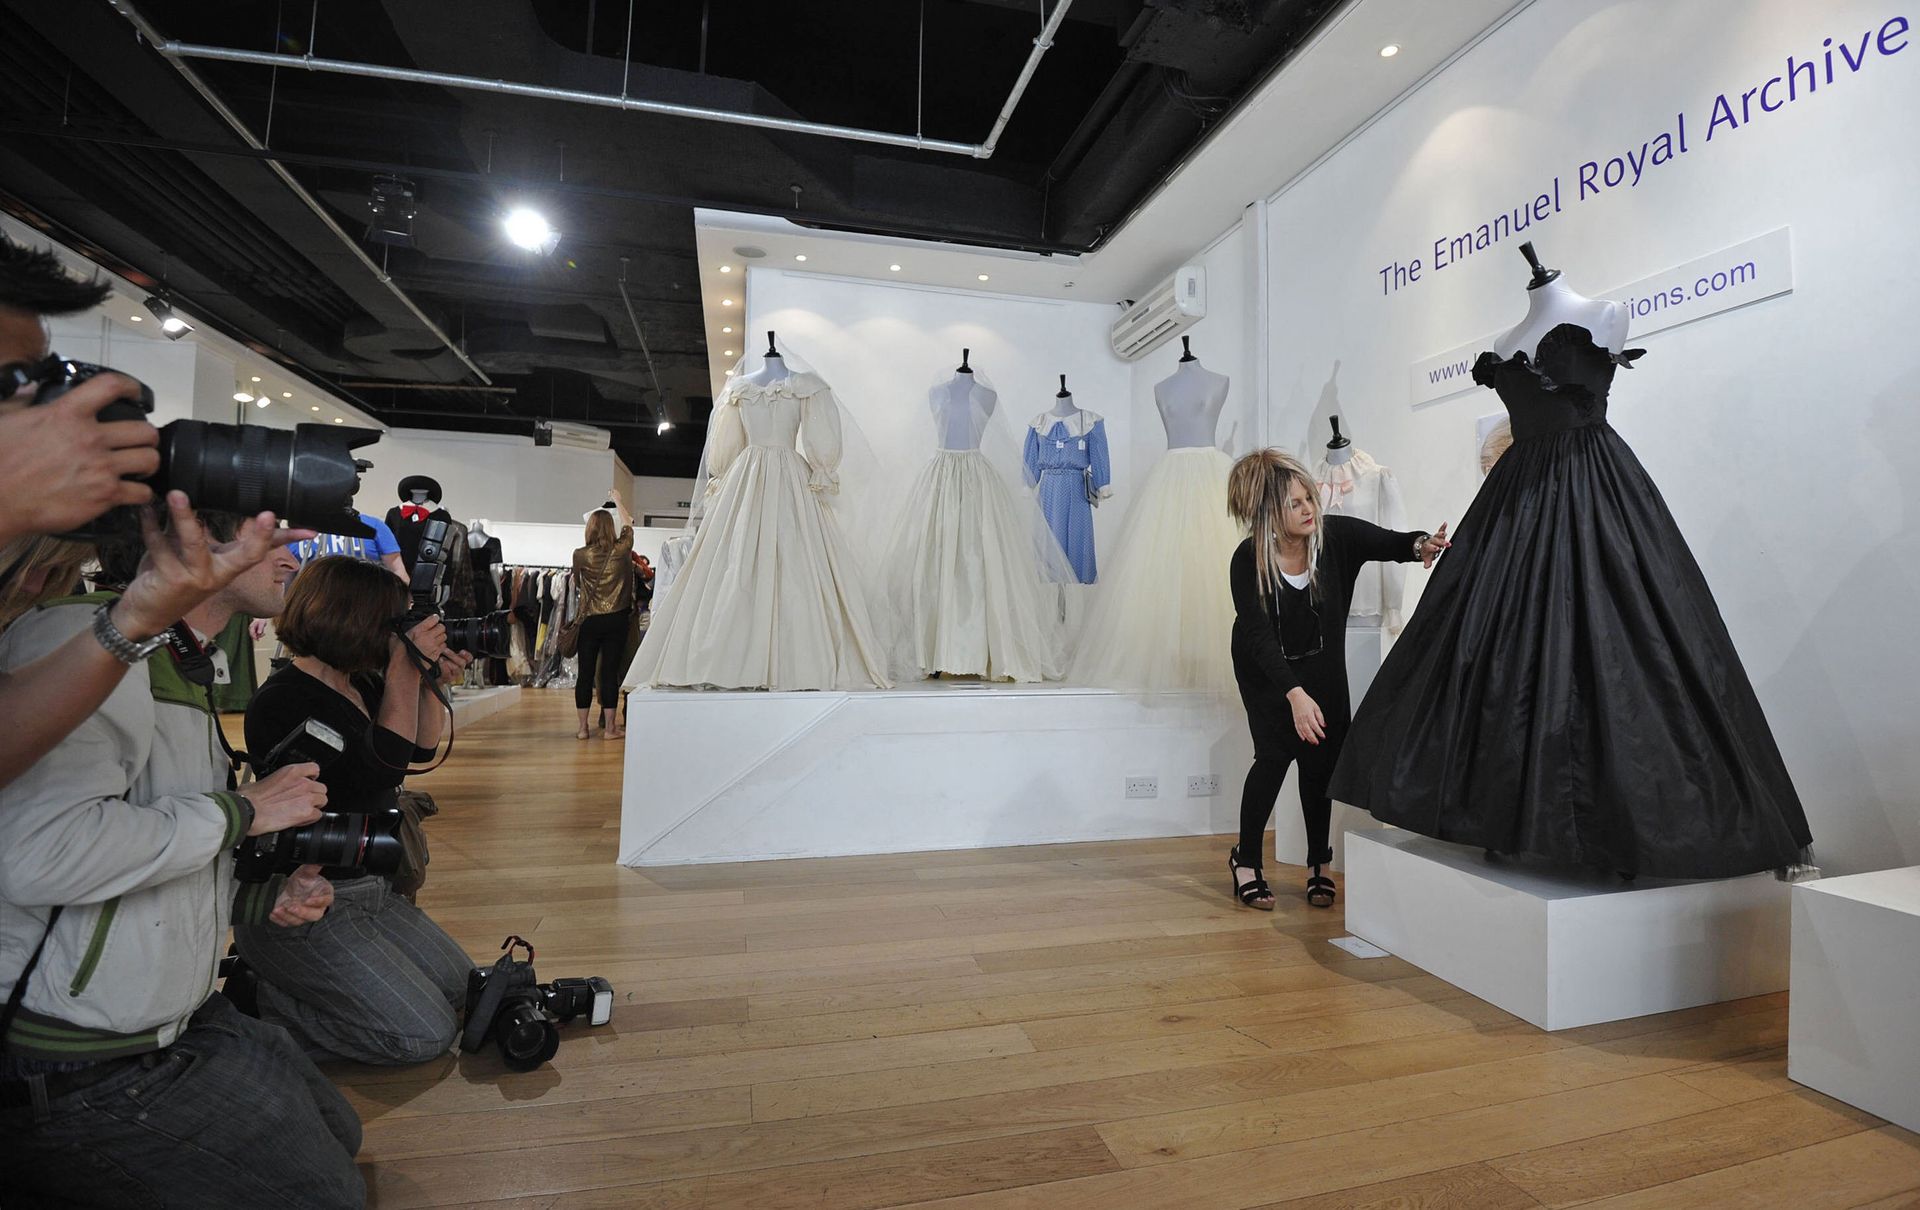 2010: Britse modeontwerpster Elizabeth Emanuel poseert voor fotografen met een van de vele jurken